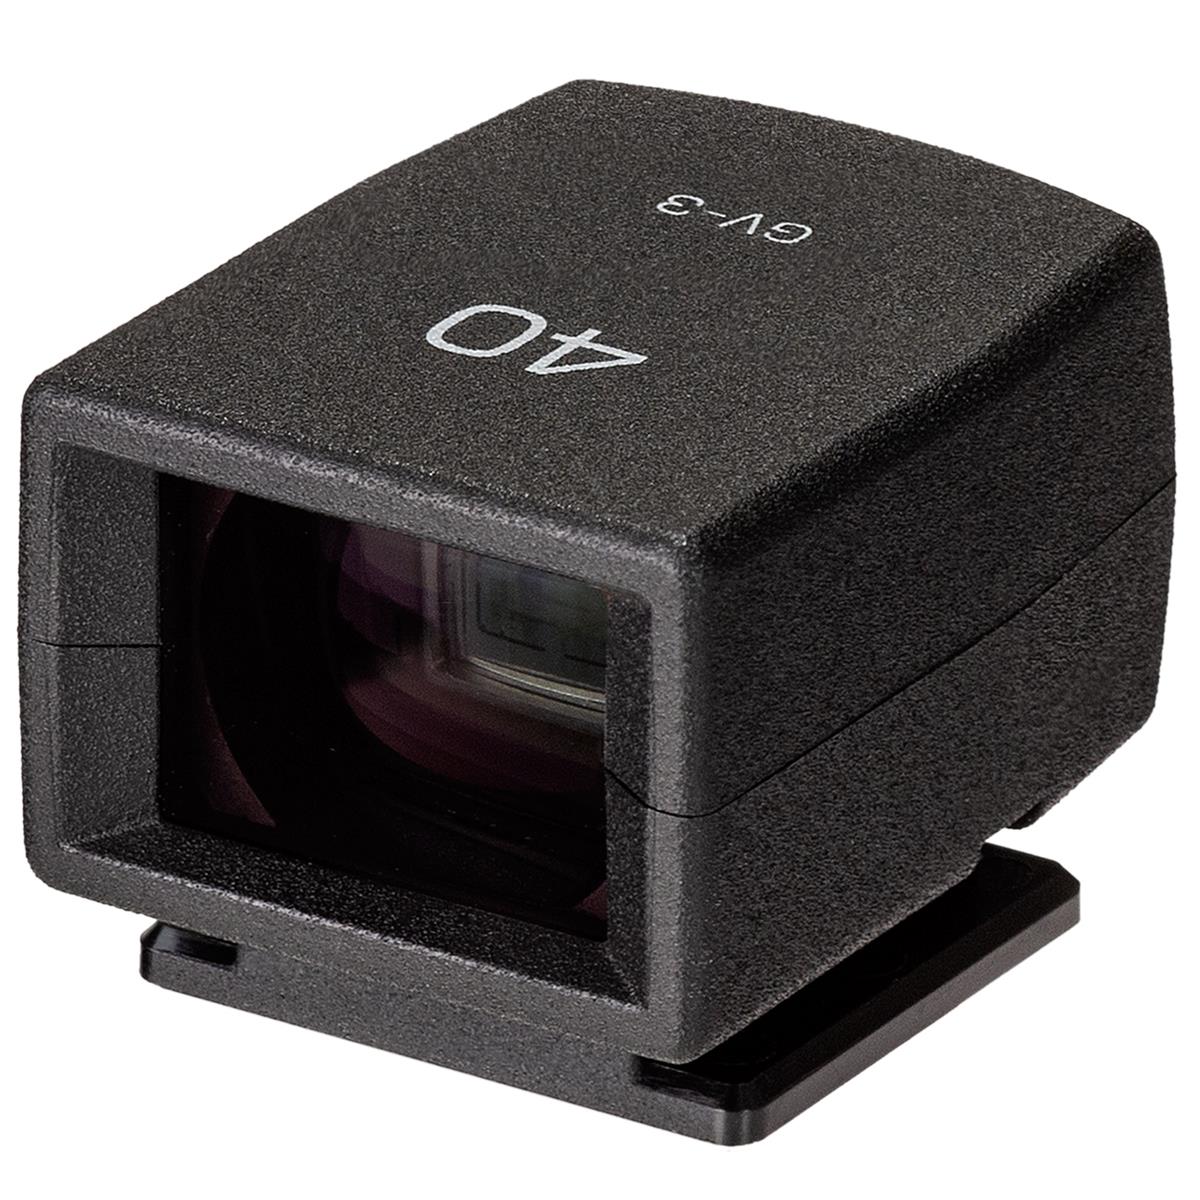 Внешний видоискатель Ricoh GV-3 для цифровой камеры GR IIIx #37828